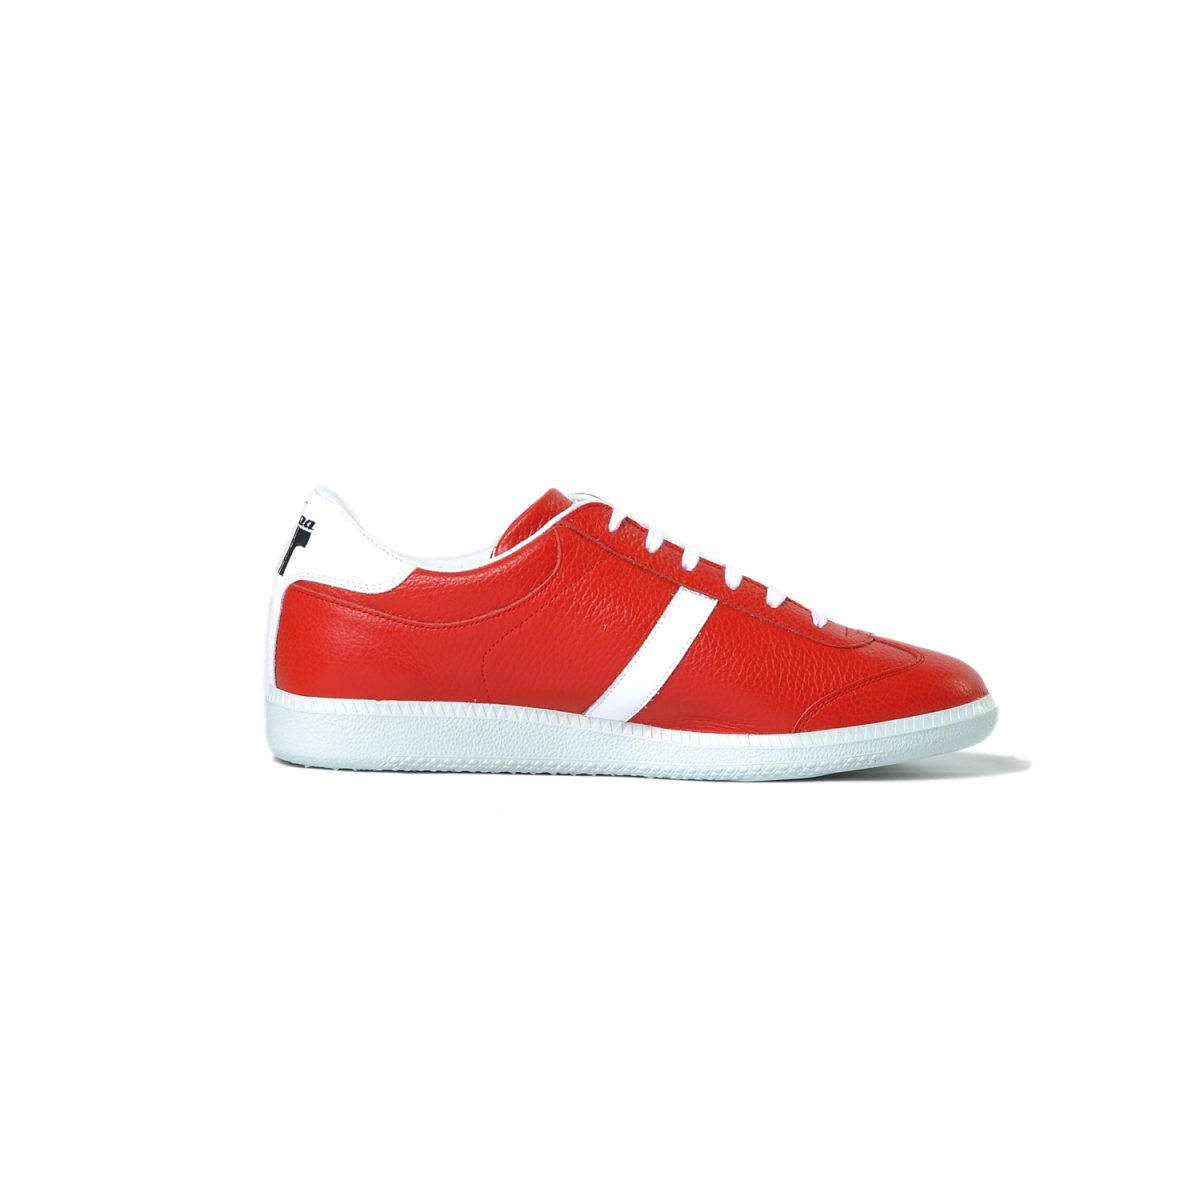 Tisza cipő - Compakt - Piros-fehér